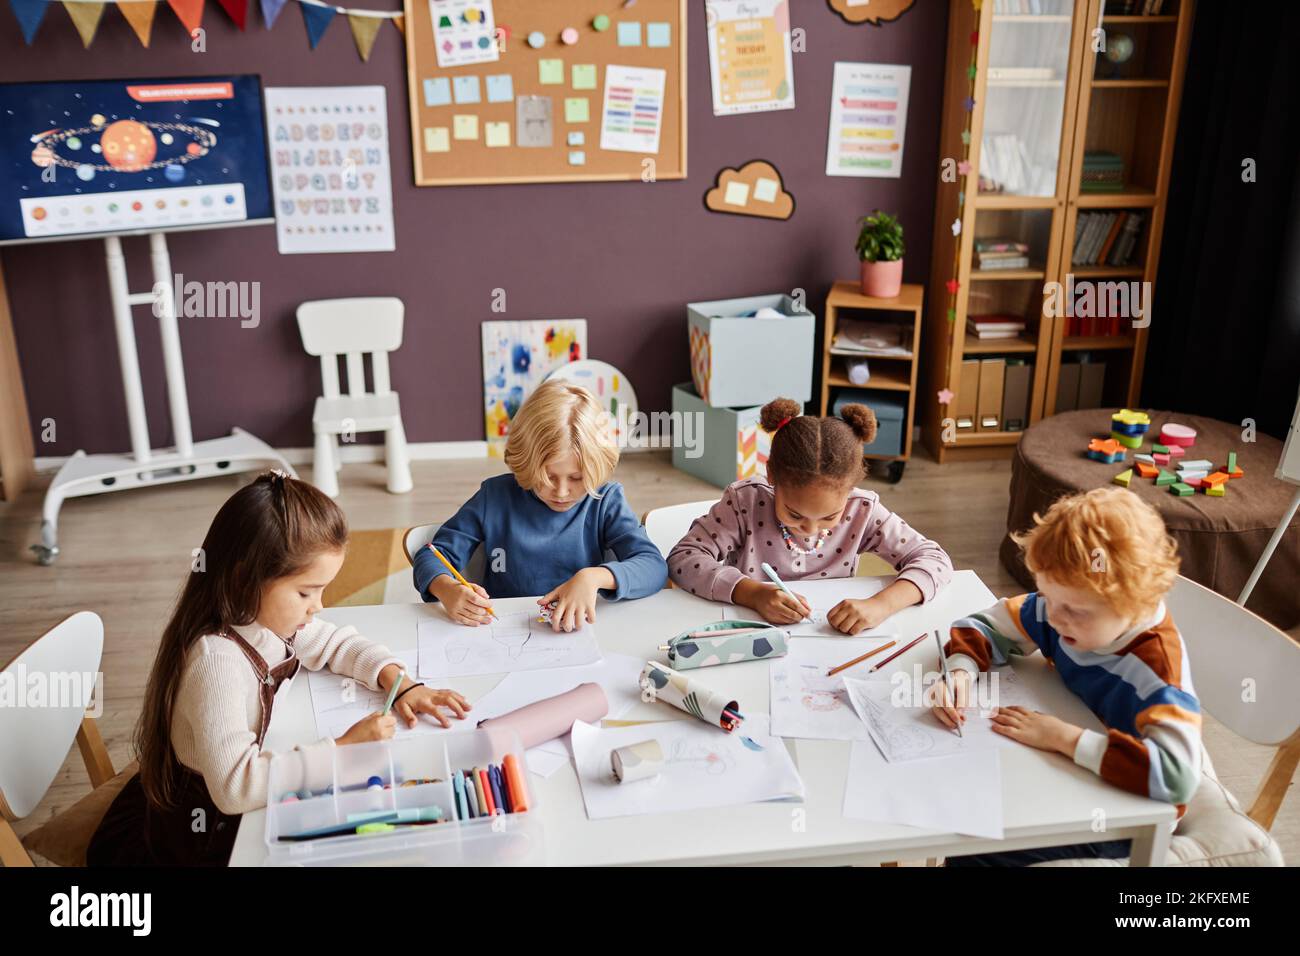 Groupe de petits apprenants créatifs de l'école maternelle réunis par le dessin de table avec des crayons multicolores à la leçon des arts en classe Banque D'Images